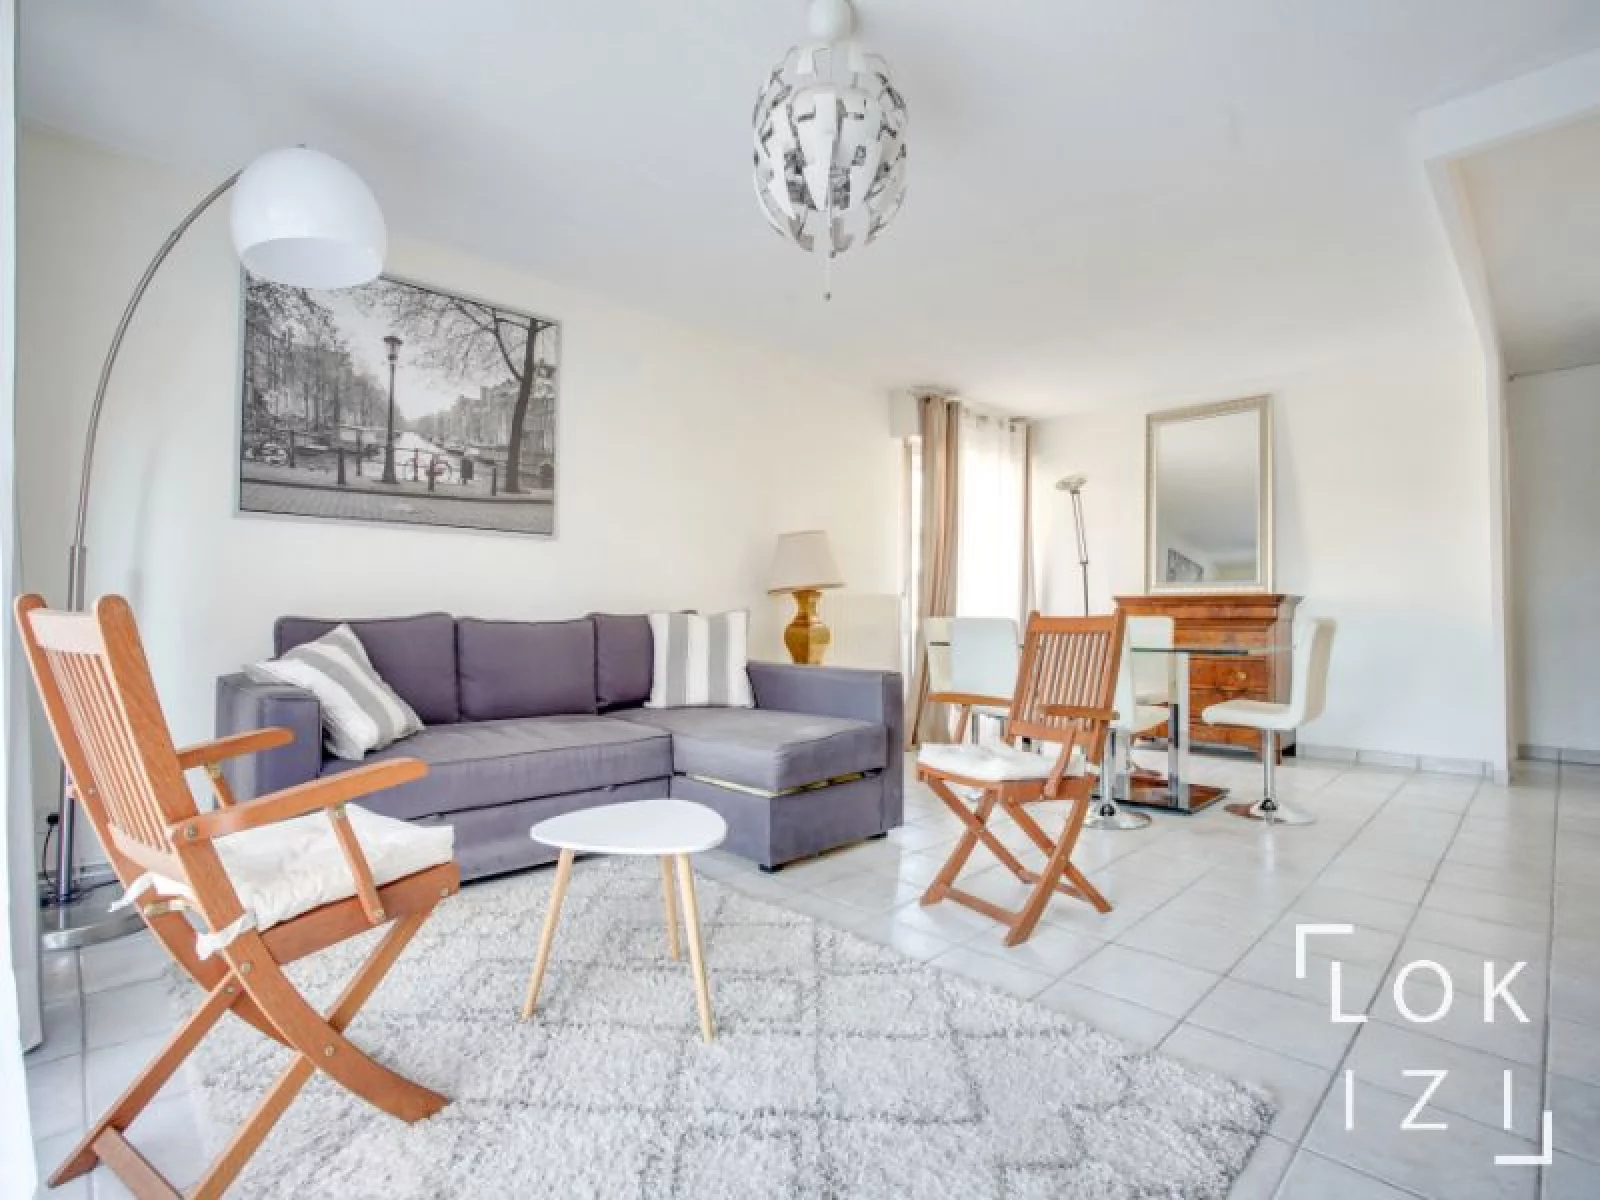 Location appartement meublé 2 pièces 68m² (Bordeaux - Eysines)